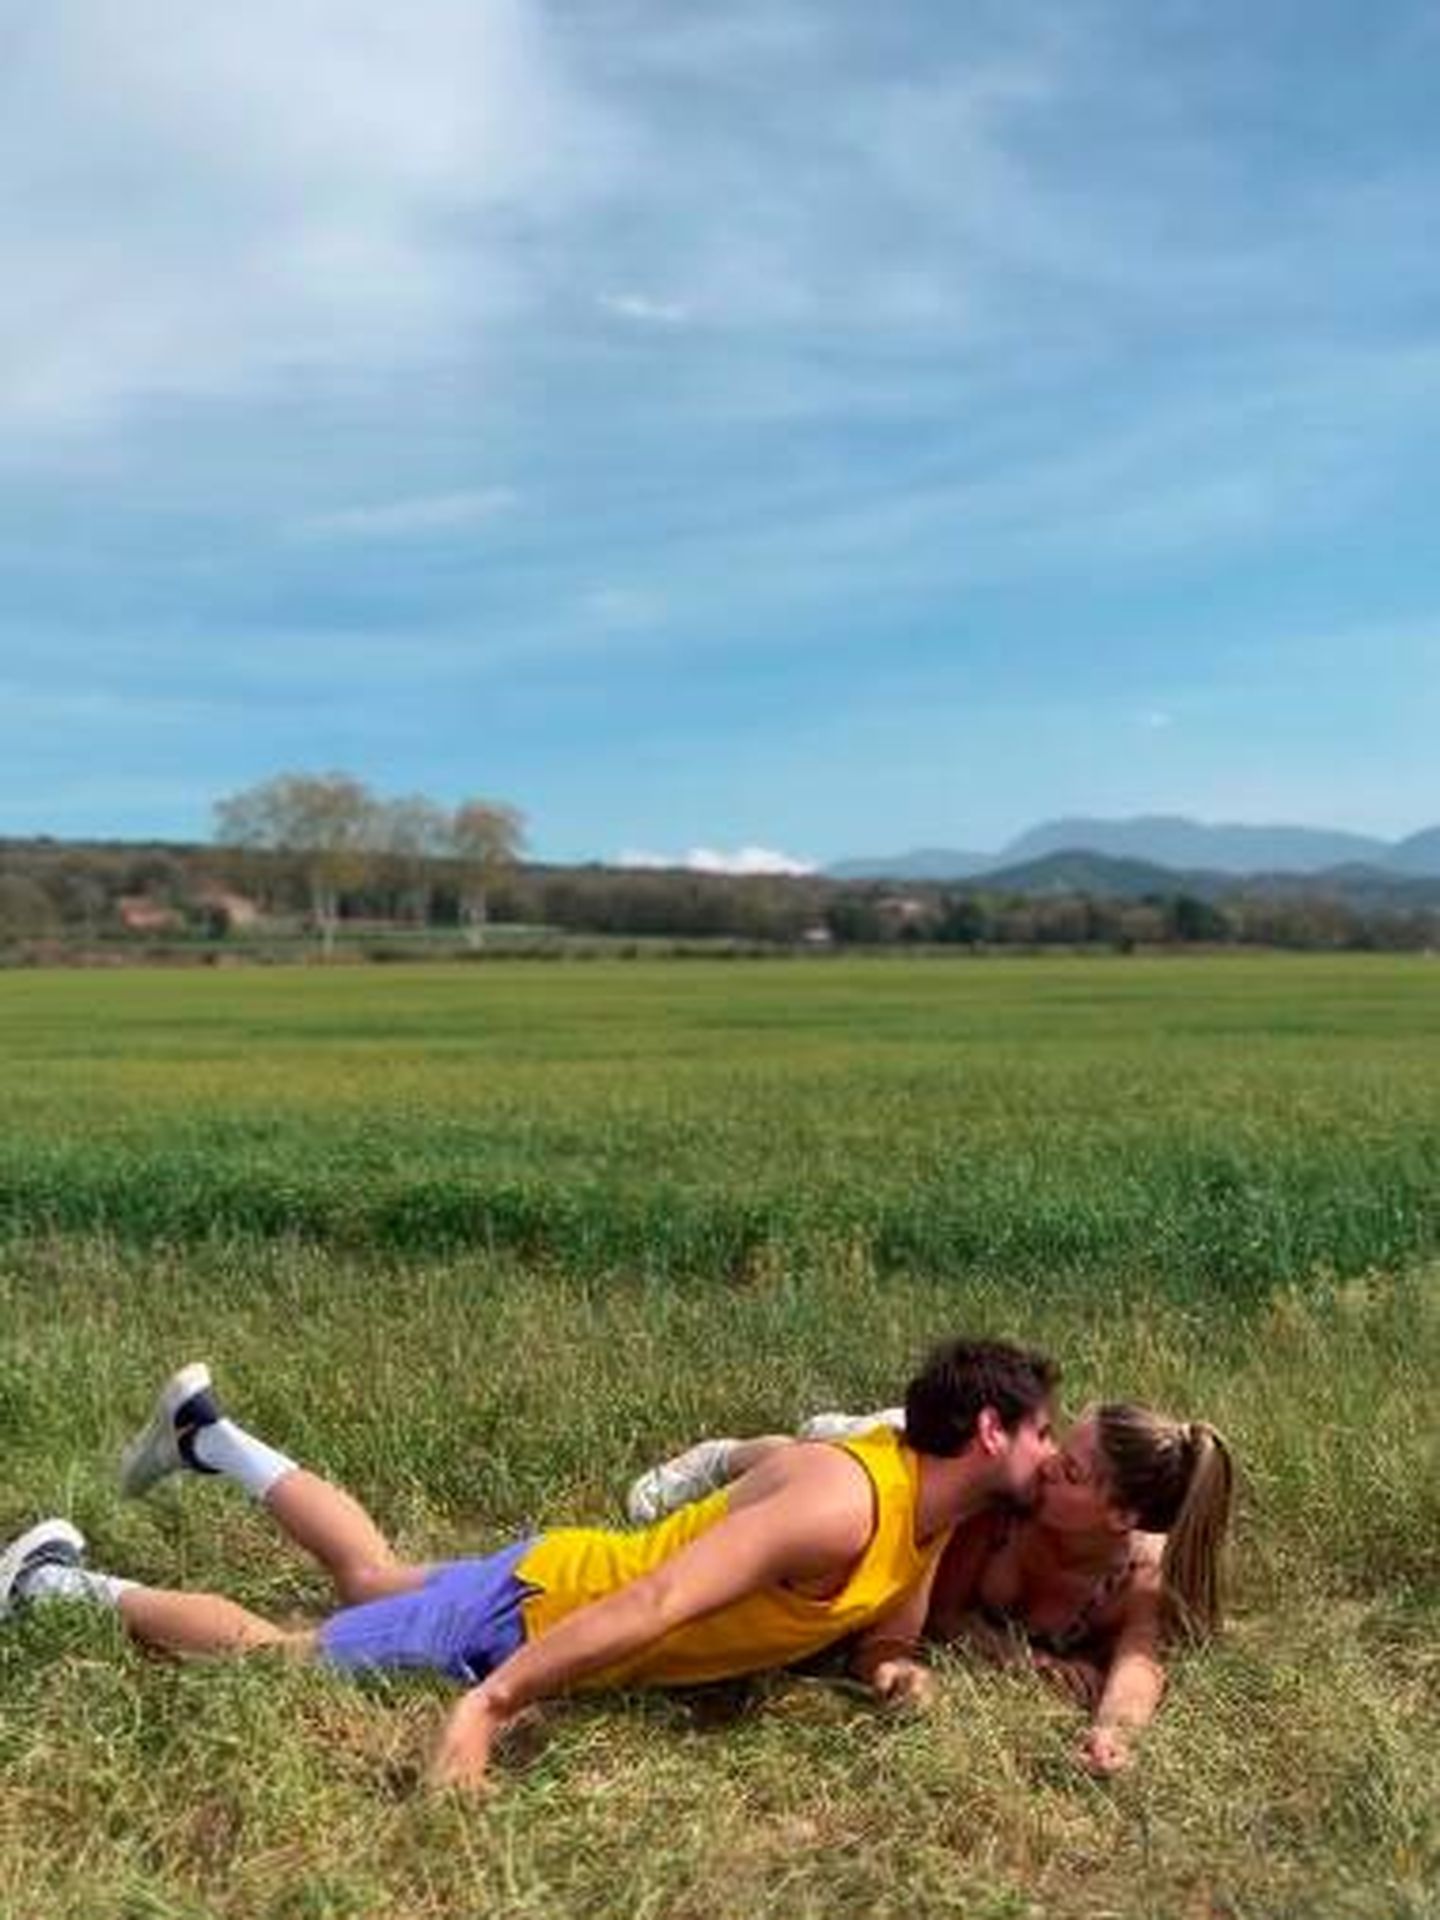 Marta Verona y Cesc Escolà besándose mientras hacían el reto del Plank Challenge. (Instagram/@cescescola)